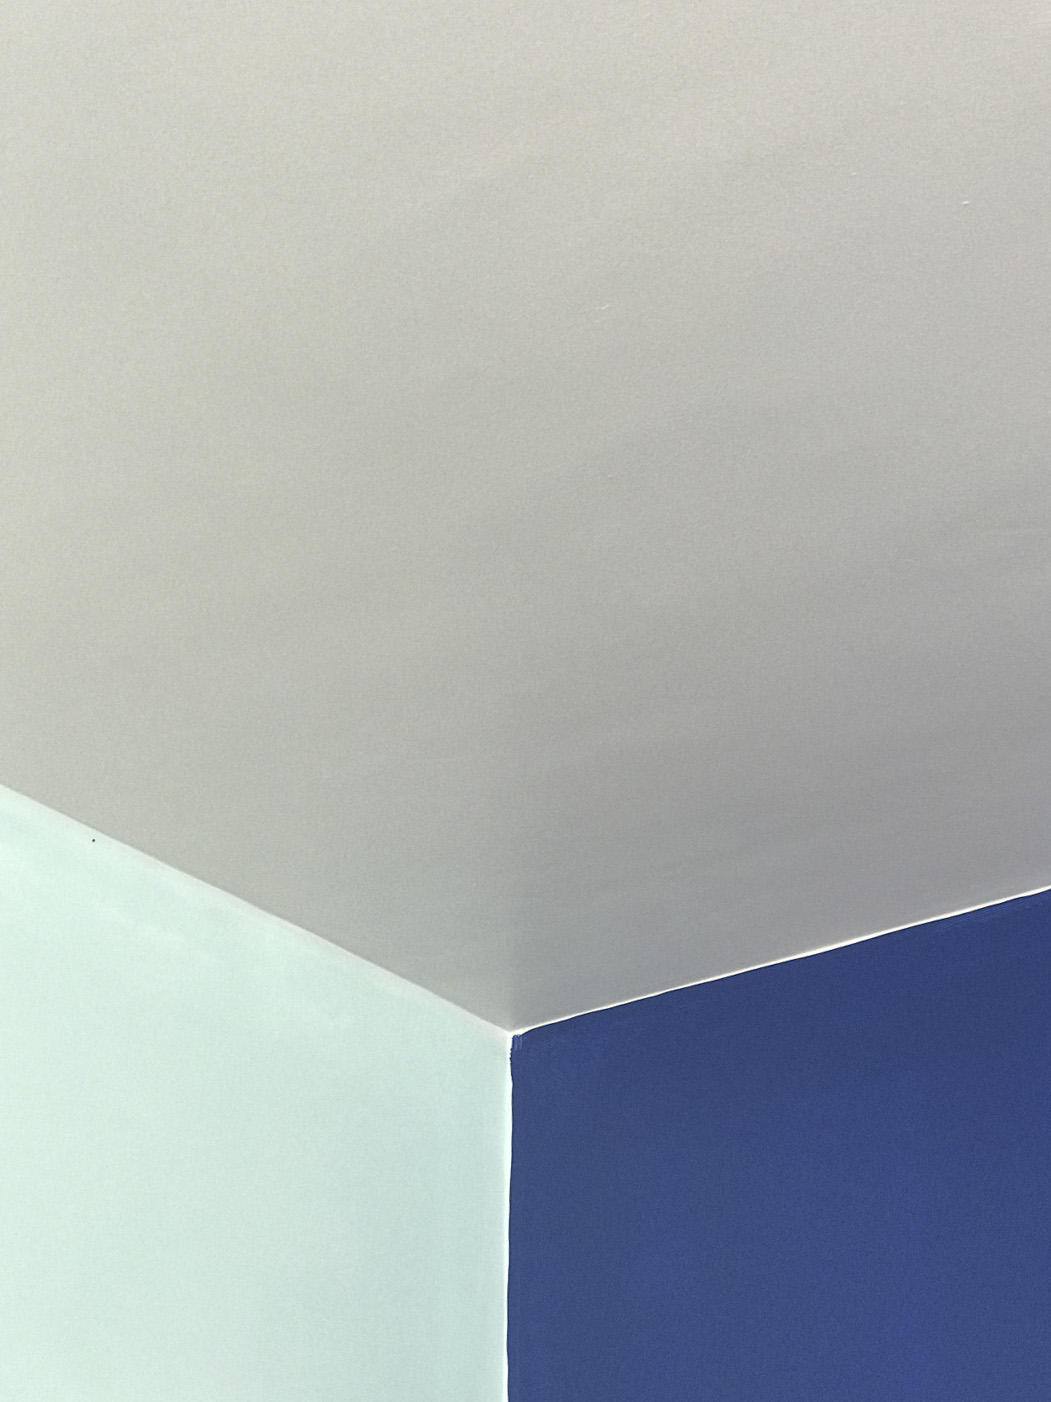 Apartamento Azul Farol - Porto - EVA evolutionary architecture - EVA atelier - Arquitecto - Remodelação (15).jpg